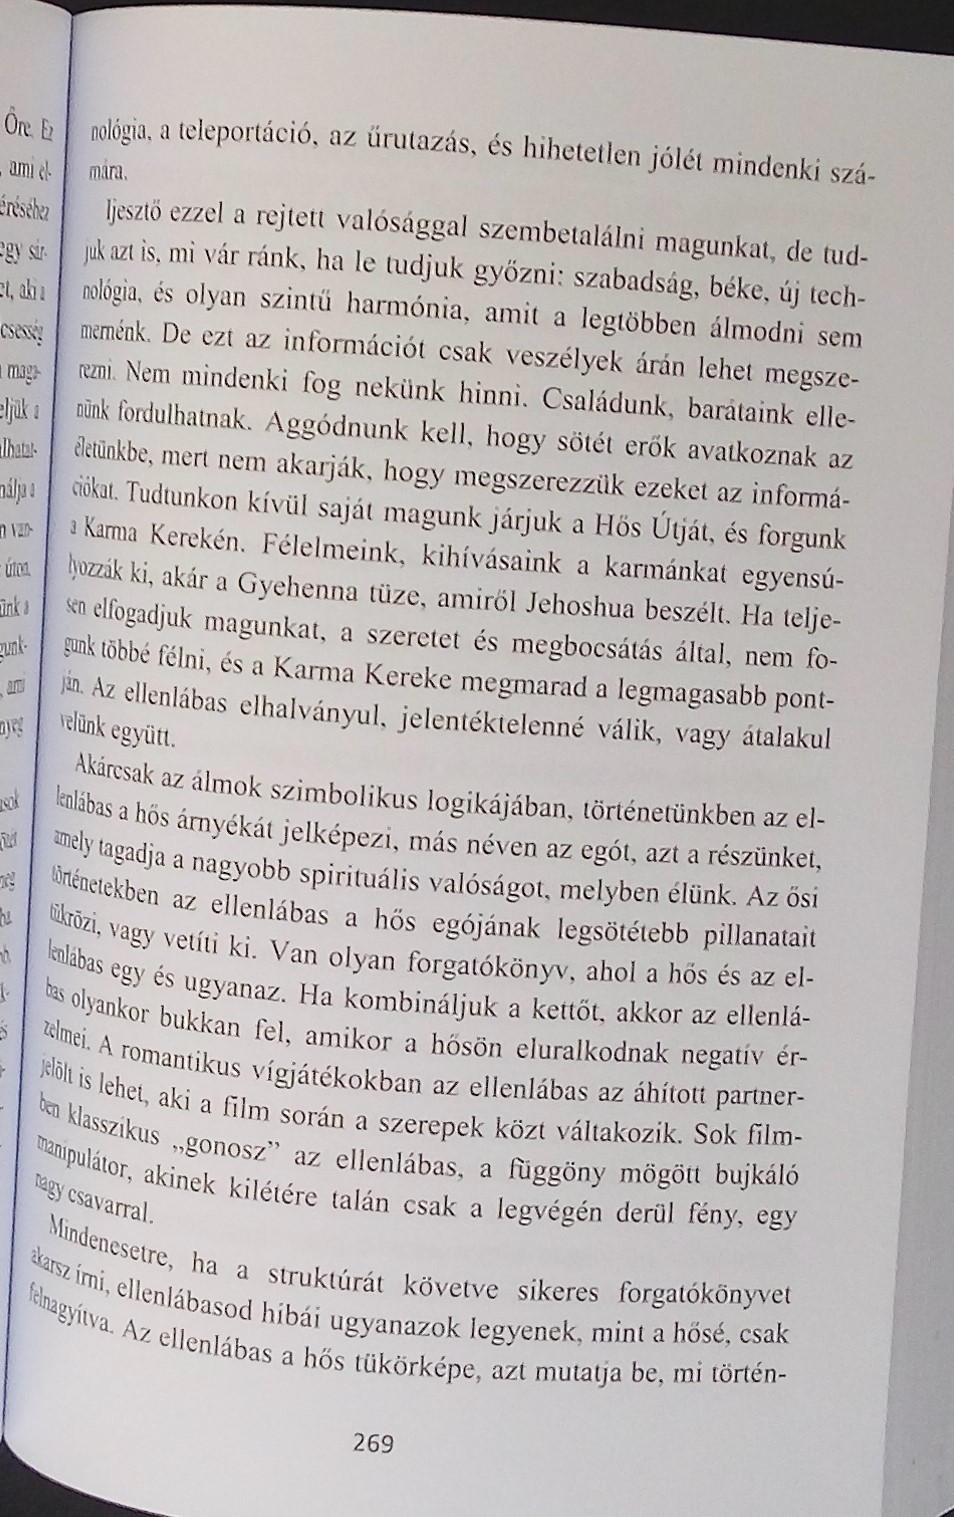 Az Univerzum BIBLIÁJA - A szinkronicitás kulcsa - David Wilcock - 269. oldal - Könyvajánló - tiltottgyumolcs.hu